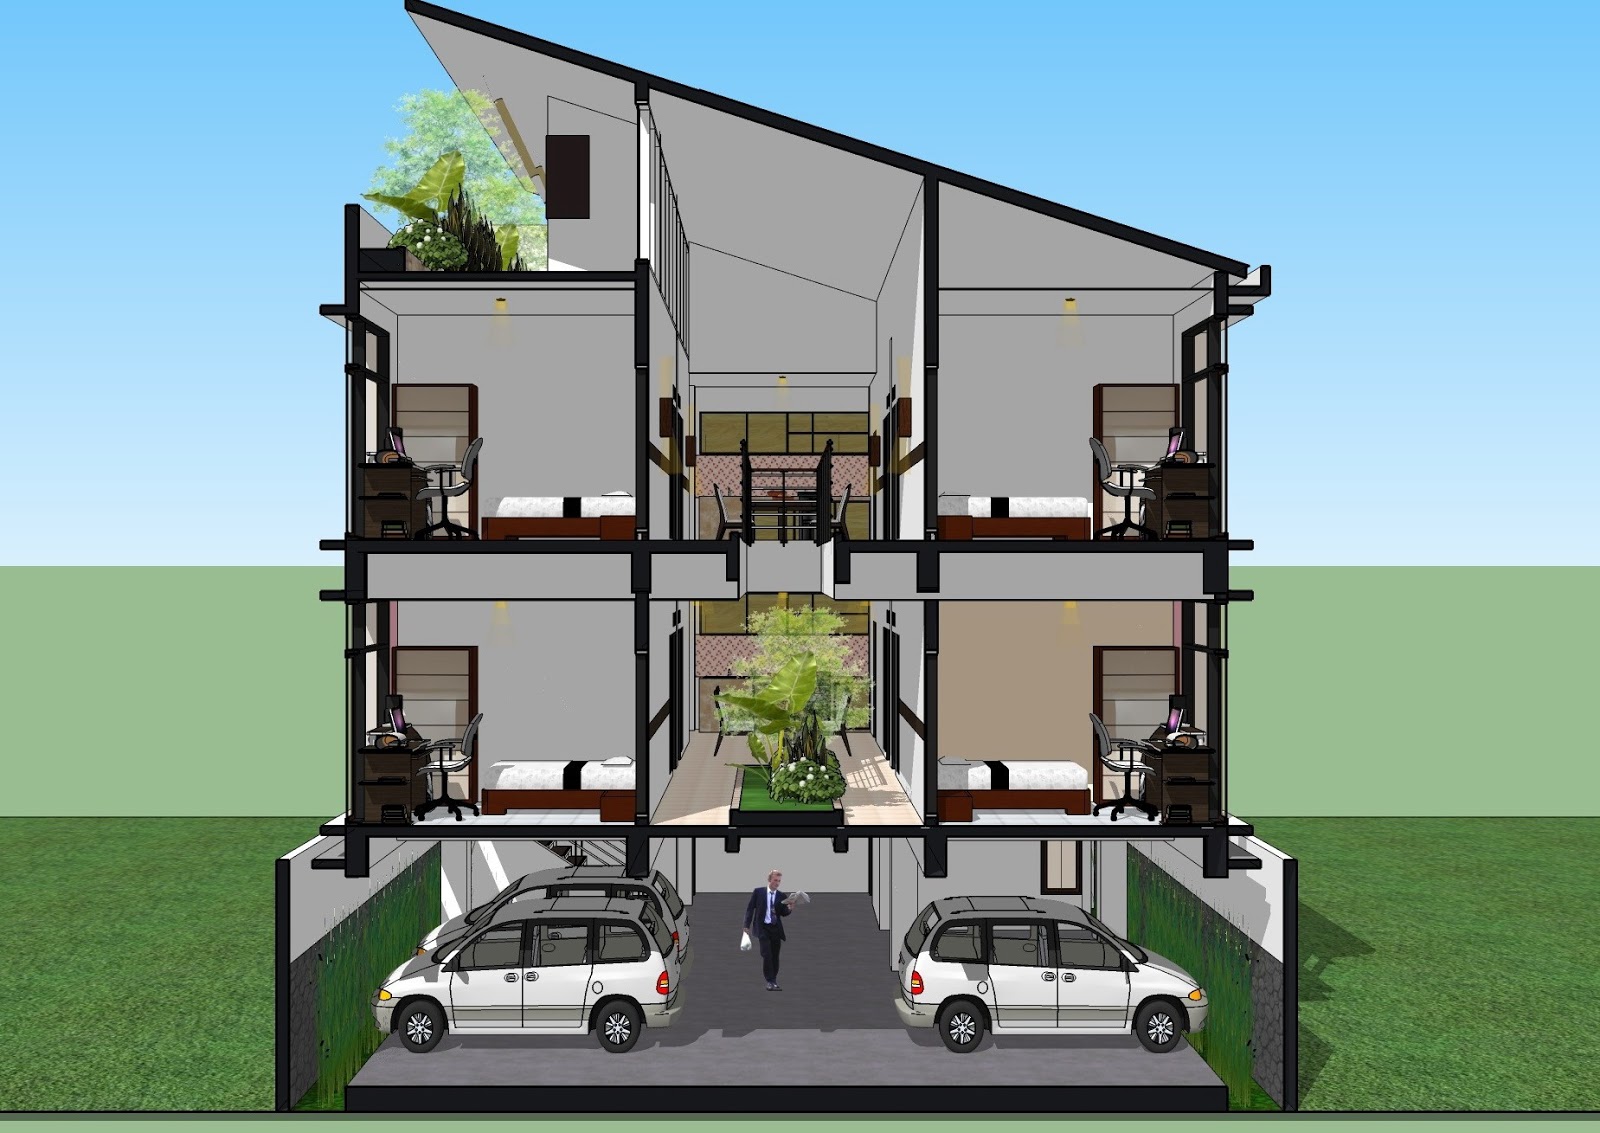 Desain Rumah Minimalis 2 Lantai Lebar 6 Meter - Hot Press 